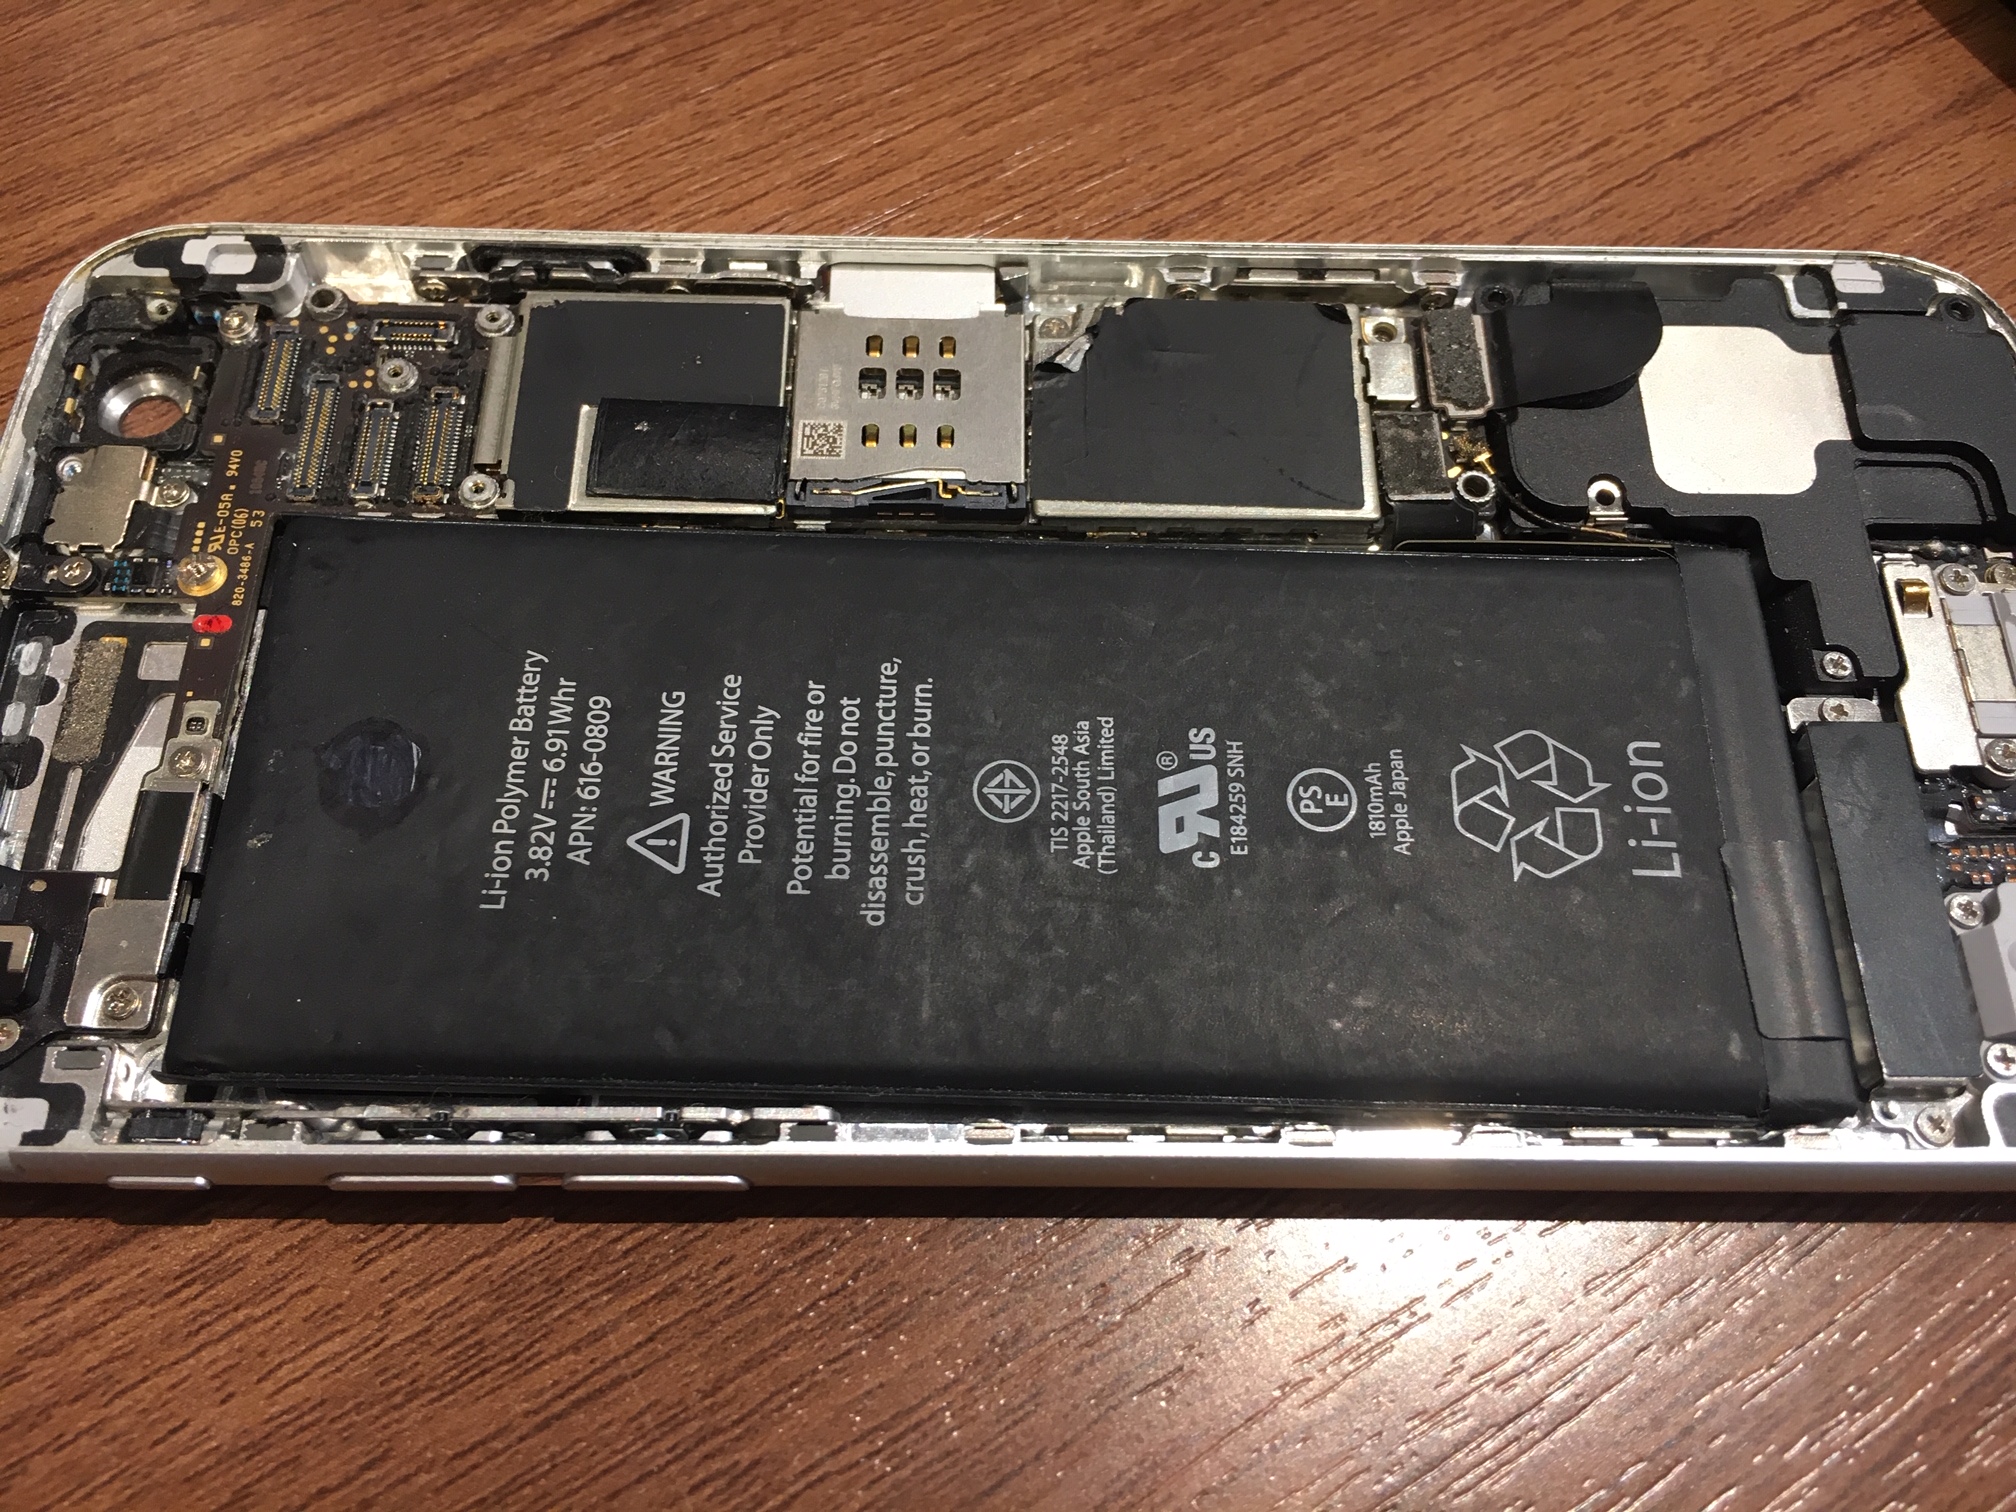 びっしょり水没のiPhone6を復活させる★尼崎、伊丹、川西のiPhone修理専門店。